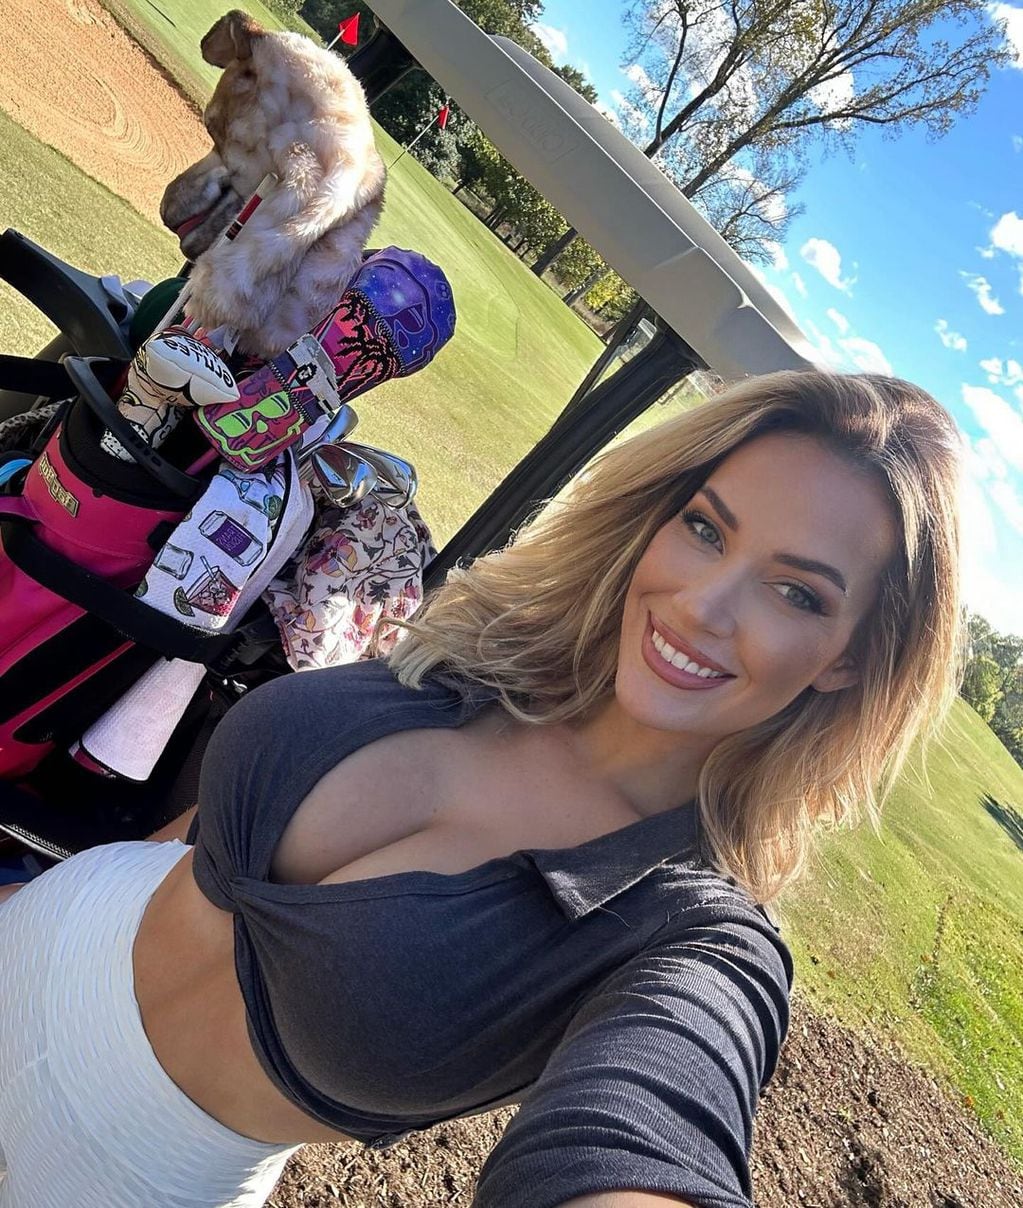 Paige Spiranac, la golfista “más linda del mundo”, se robó todas las miradas con un atrevido top.